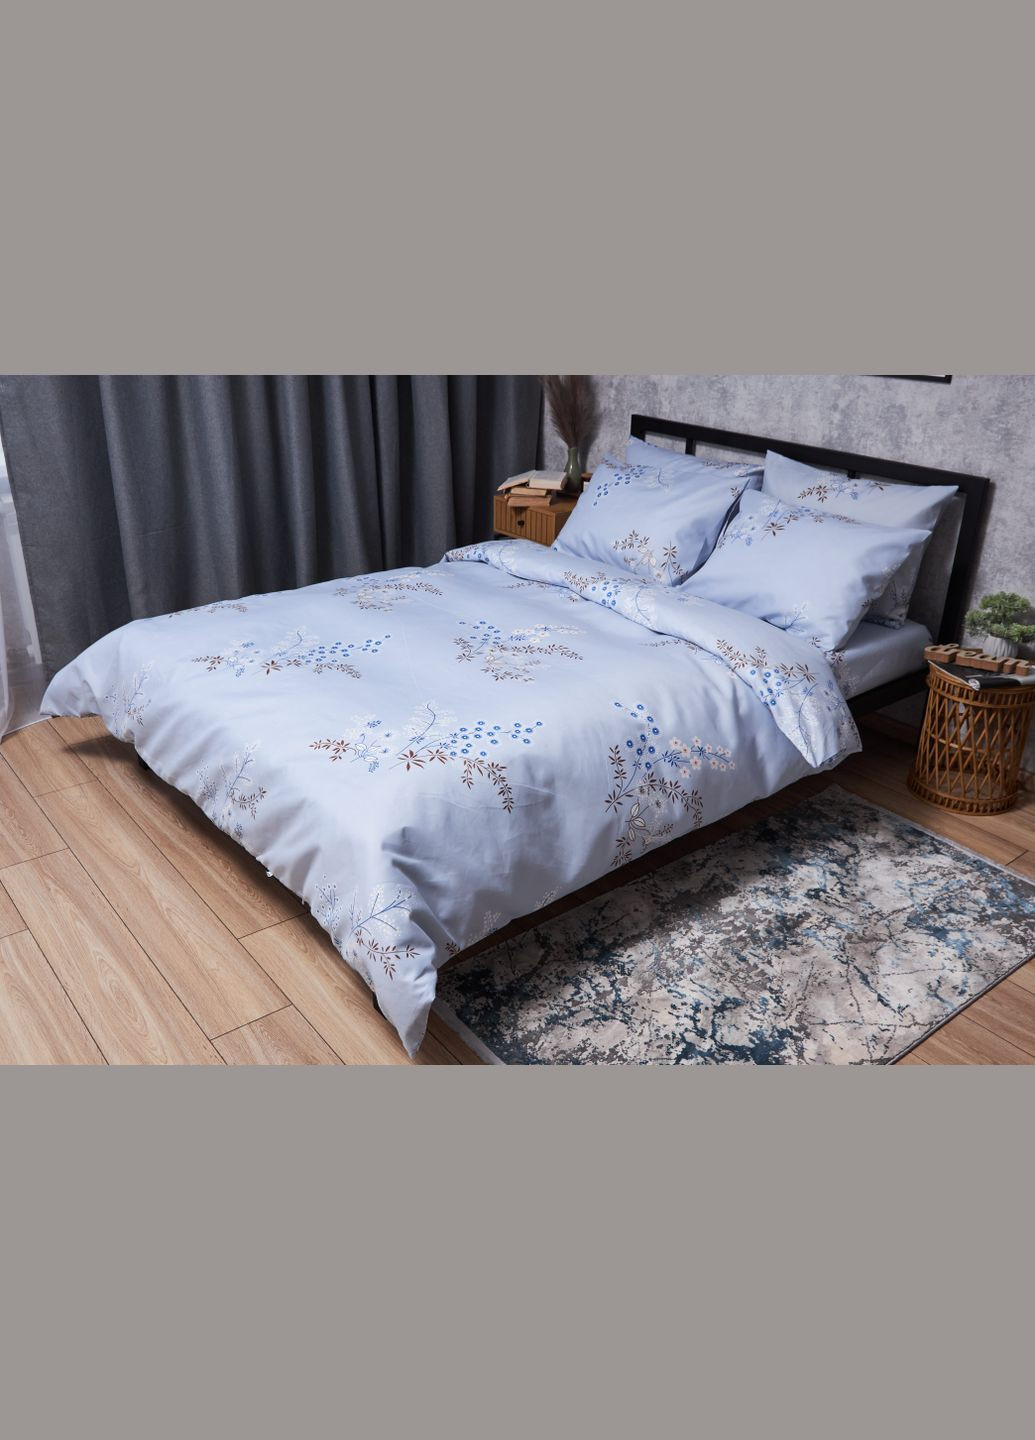 Комплект постельного белья Микросатин Premium «» полуторный евро 160х220 наволочки 2х50х70 Moon&Star lavender bliss (293148102)